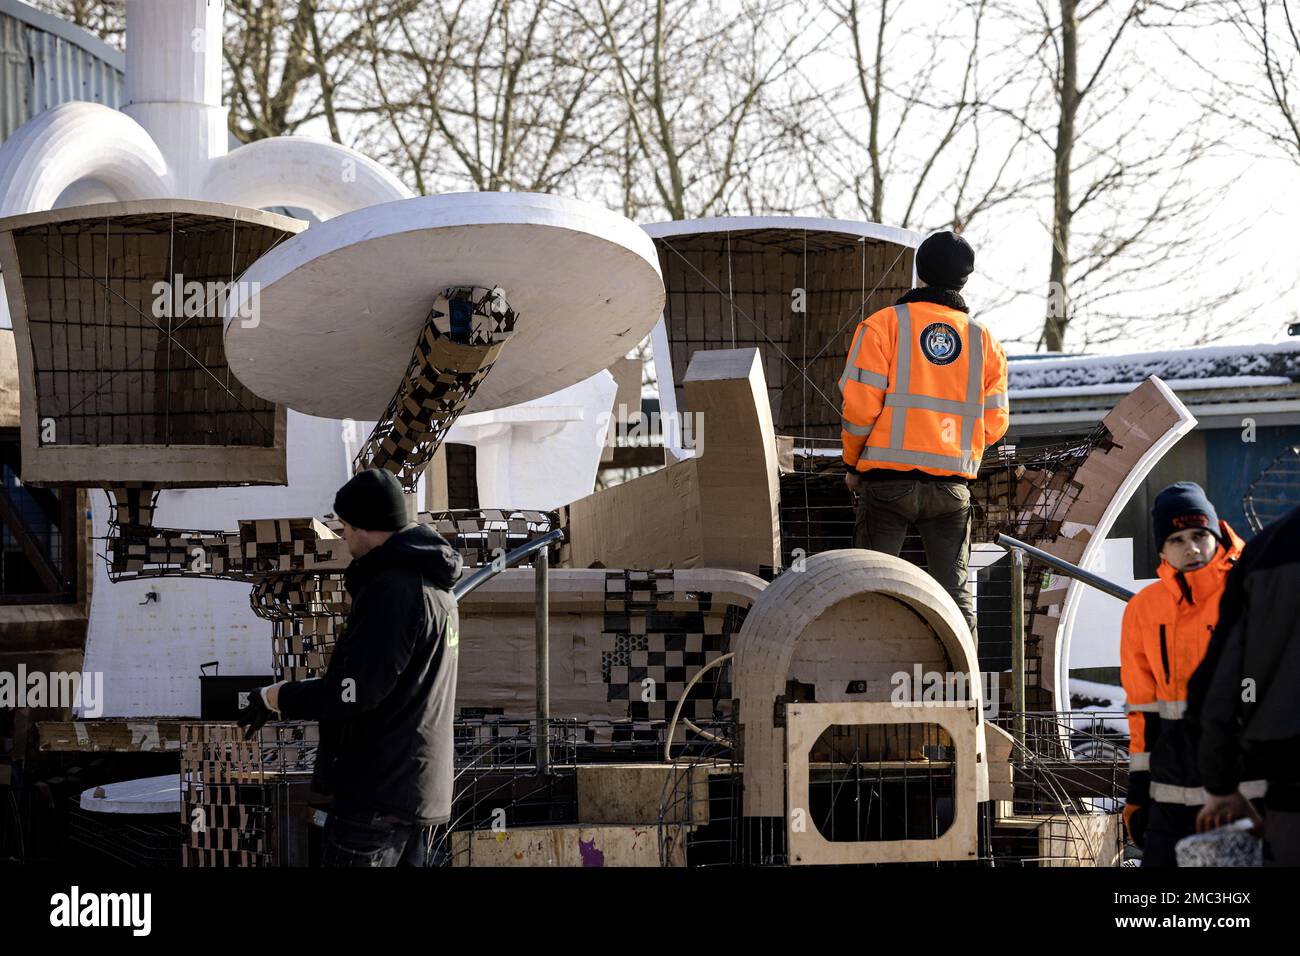 OIRSCHOT - Mitglieder einer Karnevalsvereinigung üben, einen Wagen zu bauen. Im Februar wird im Süden des Landes Karneval gefeiert. ANP ROB ENGELAAR netherlands Out - belgium Out Credit: ANP/Alamy Live News Stockfoto